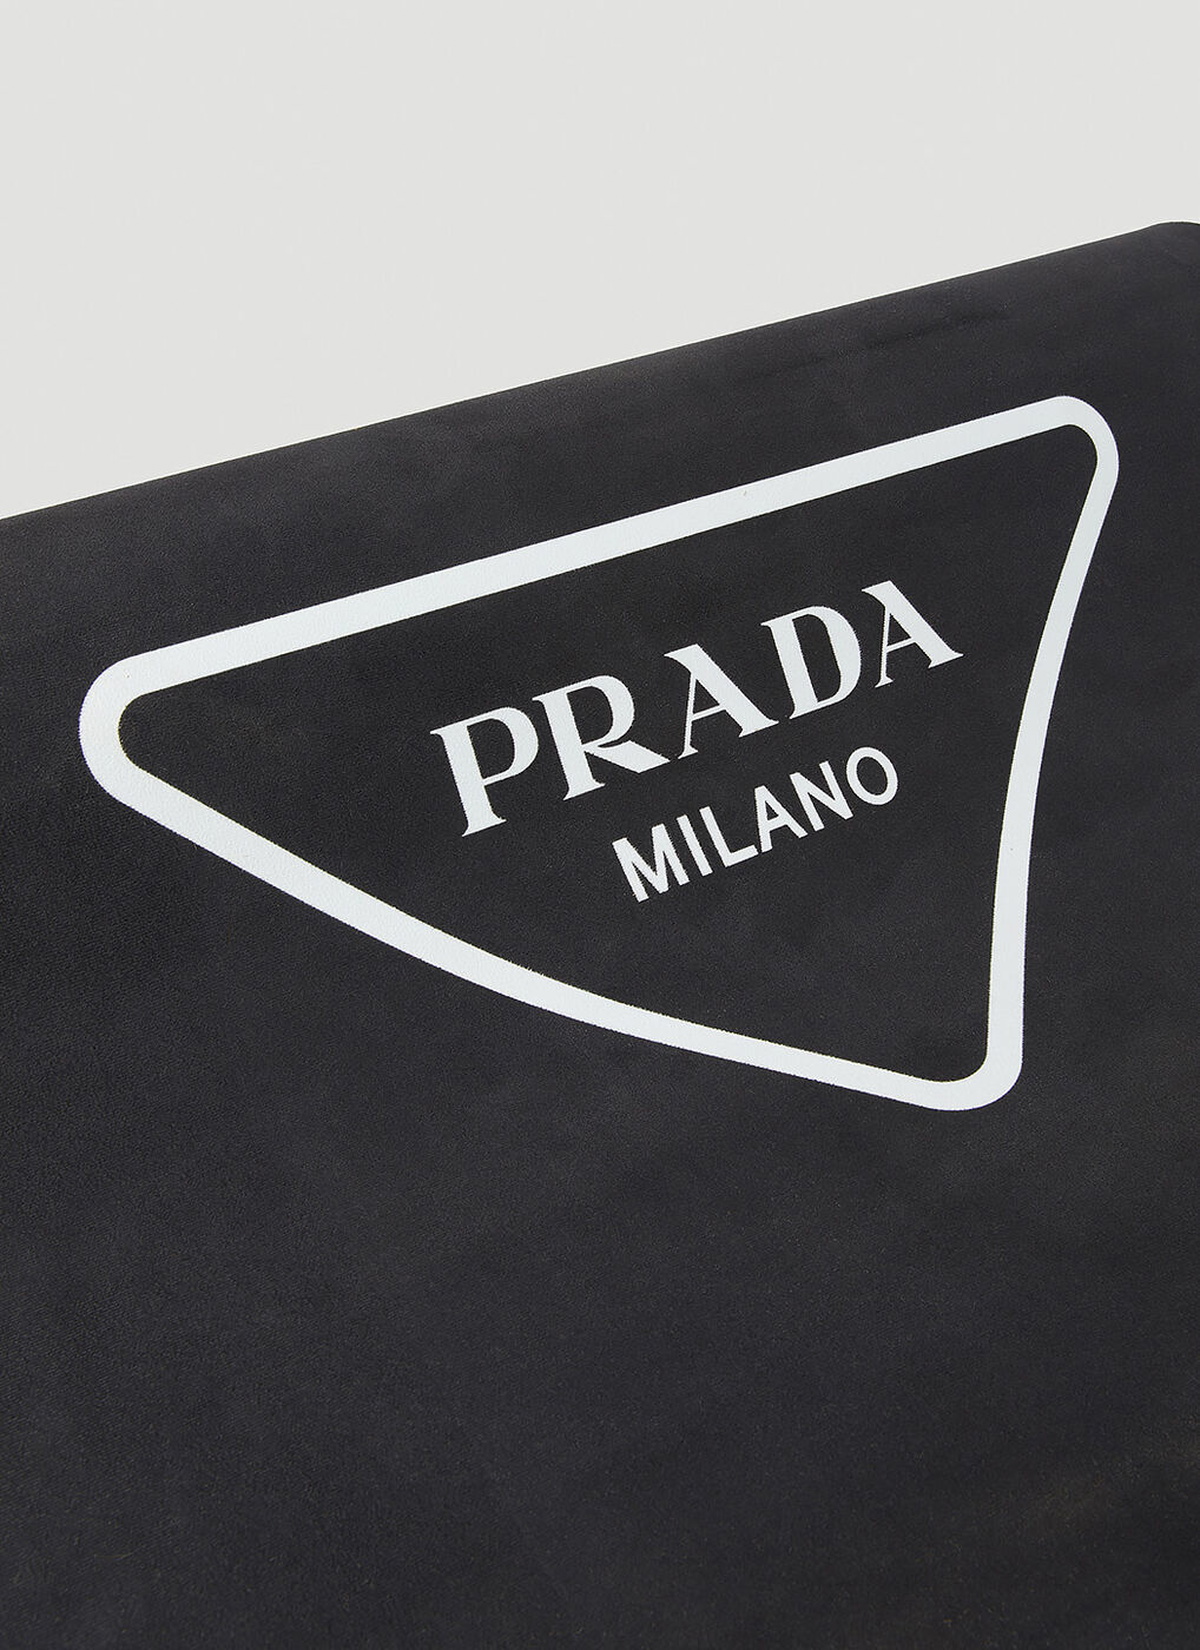 Logo Print Yoga Mat in Black Prada